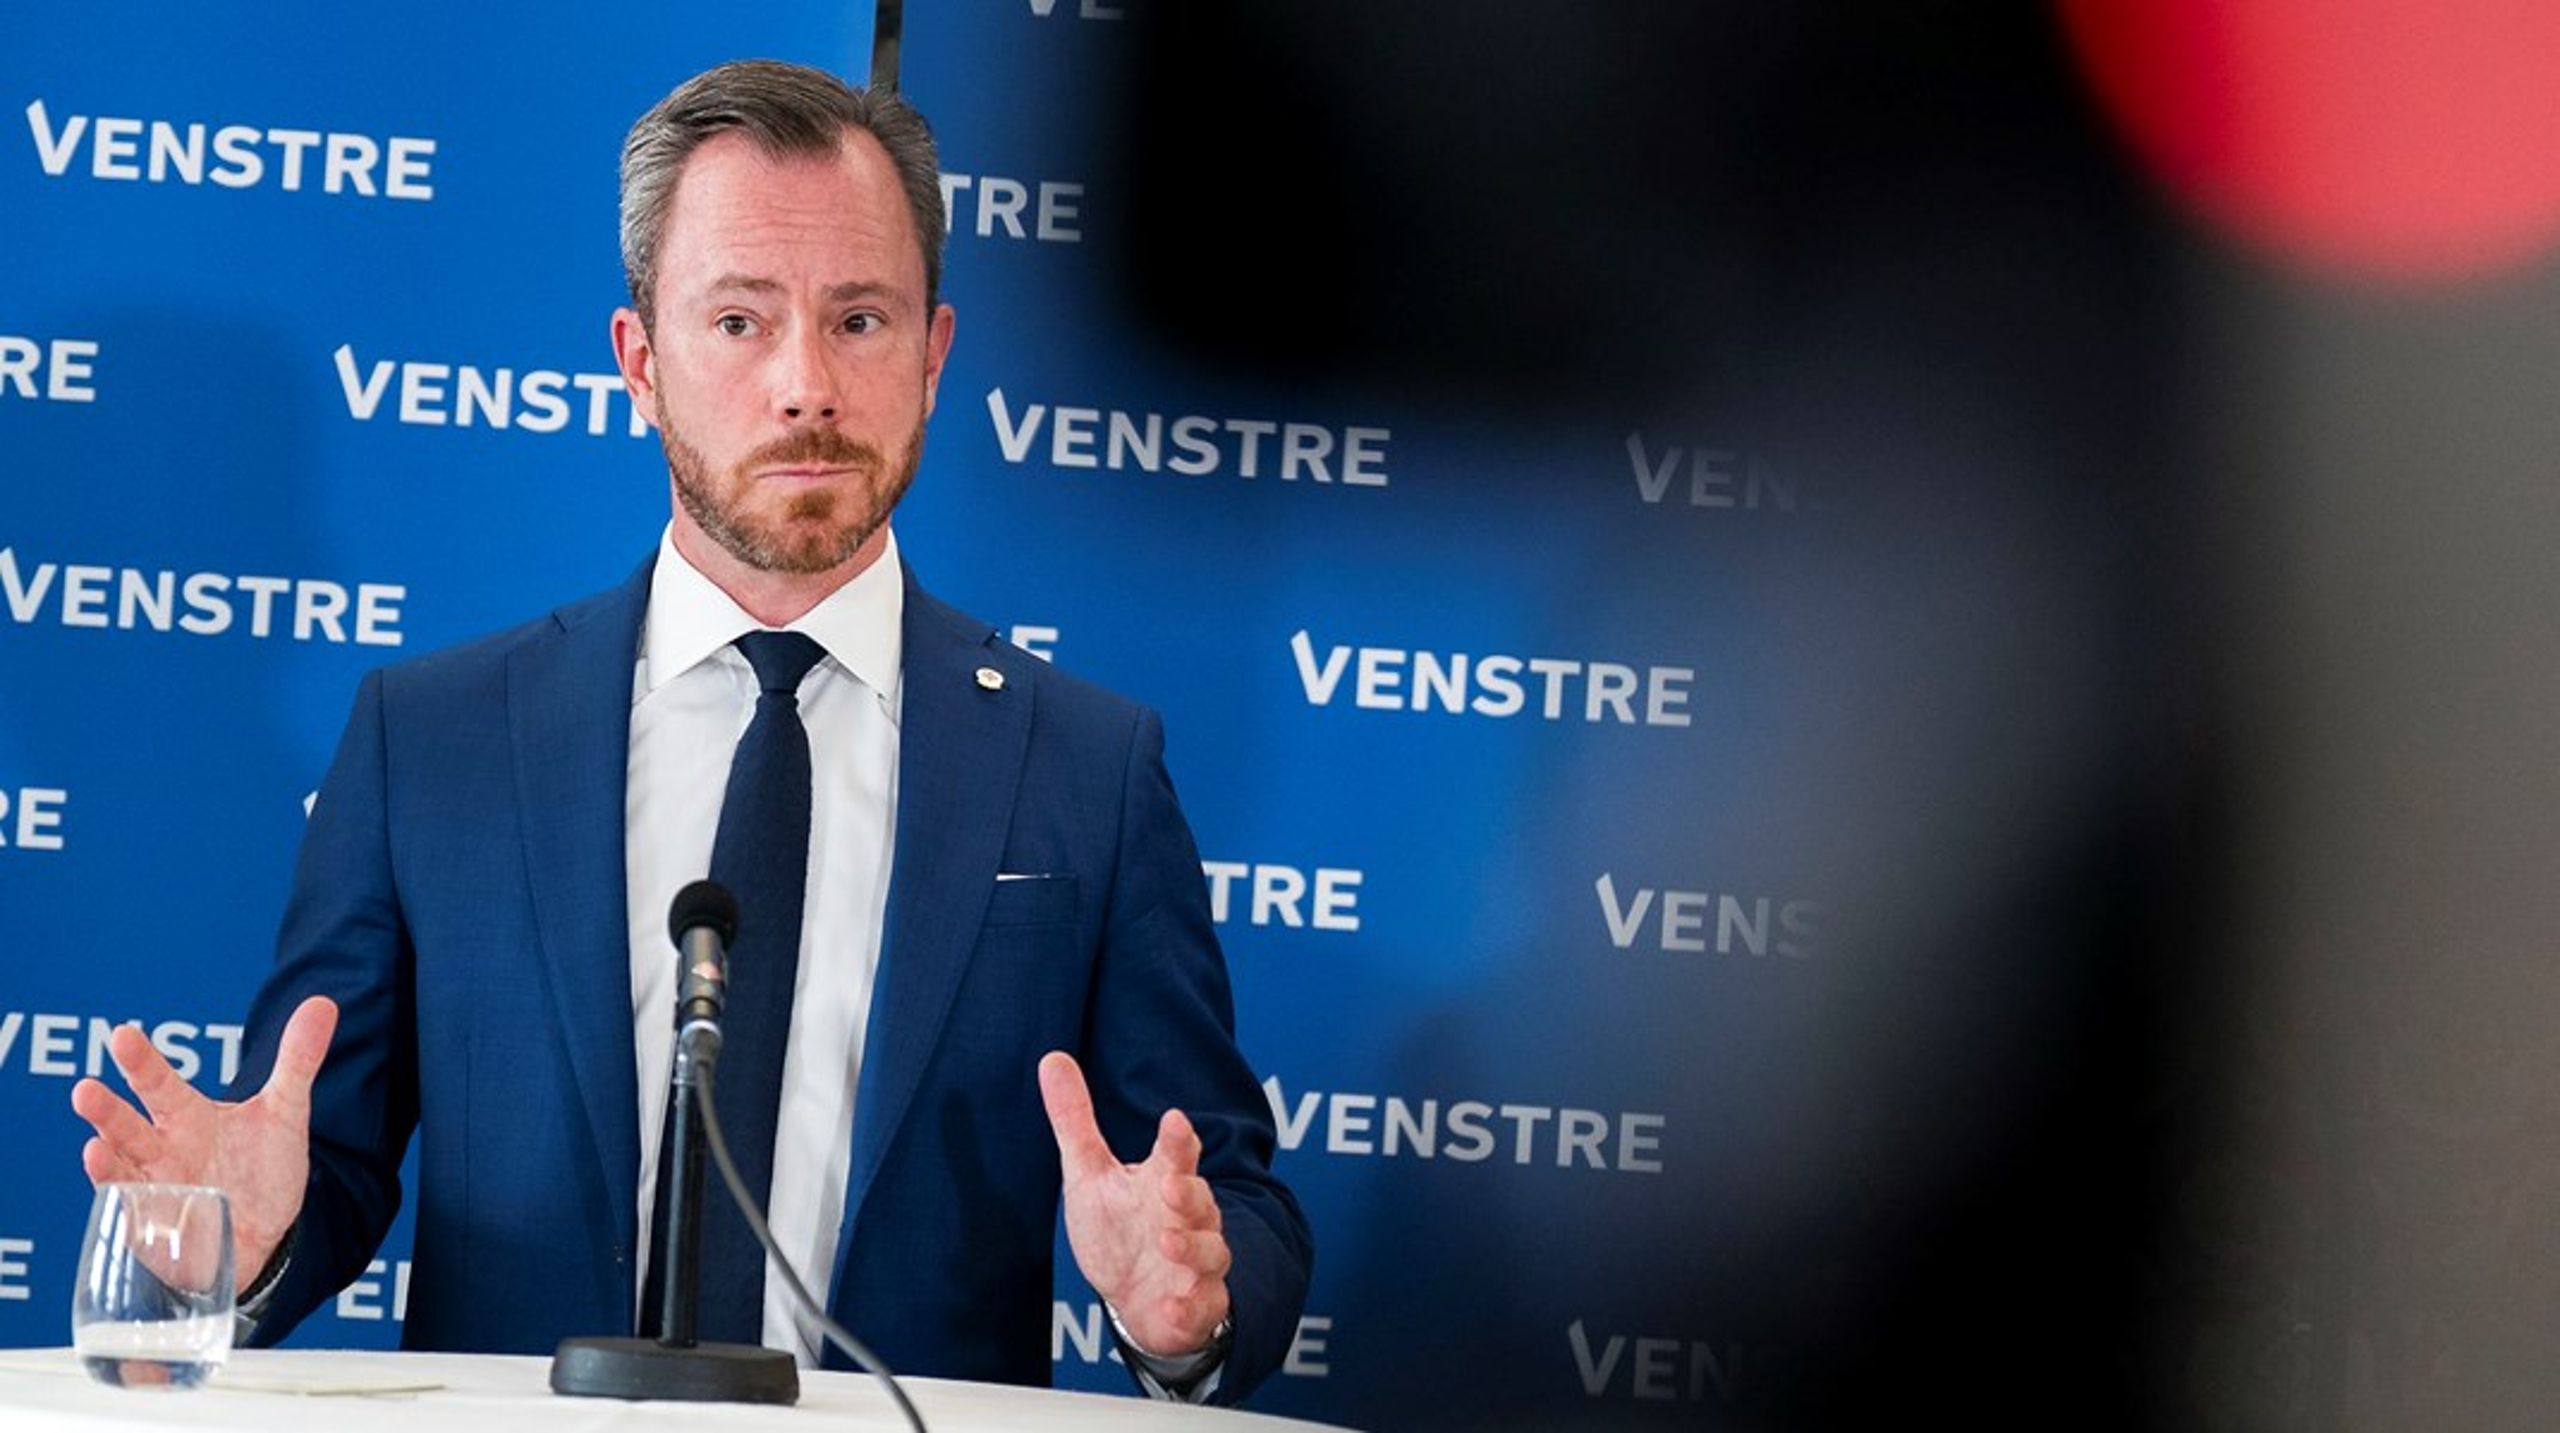 Venstres formand Jakob Ellemann-Jensen (V) præsenterede mandag partiets nye boligudspil.